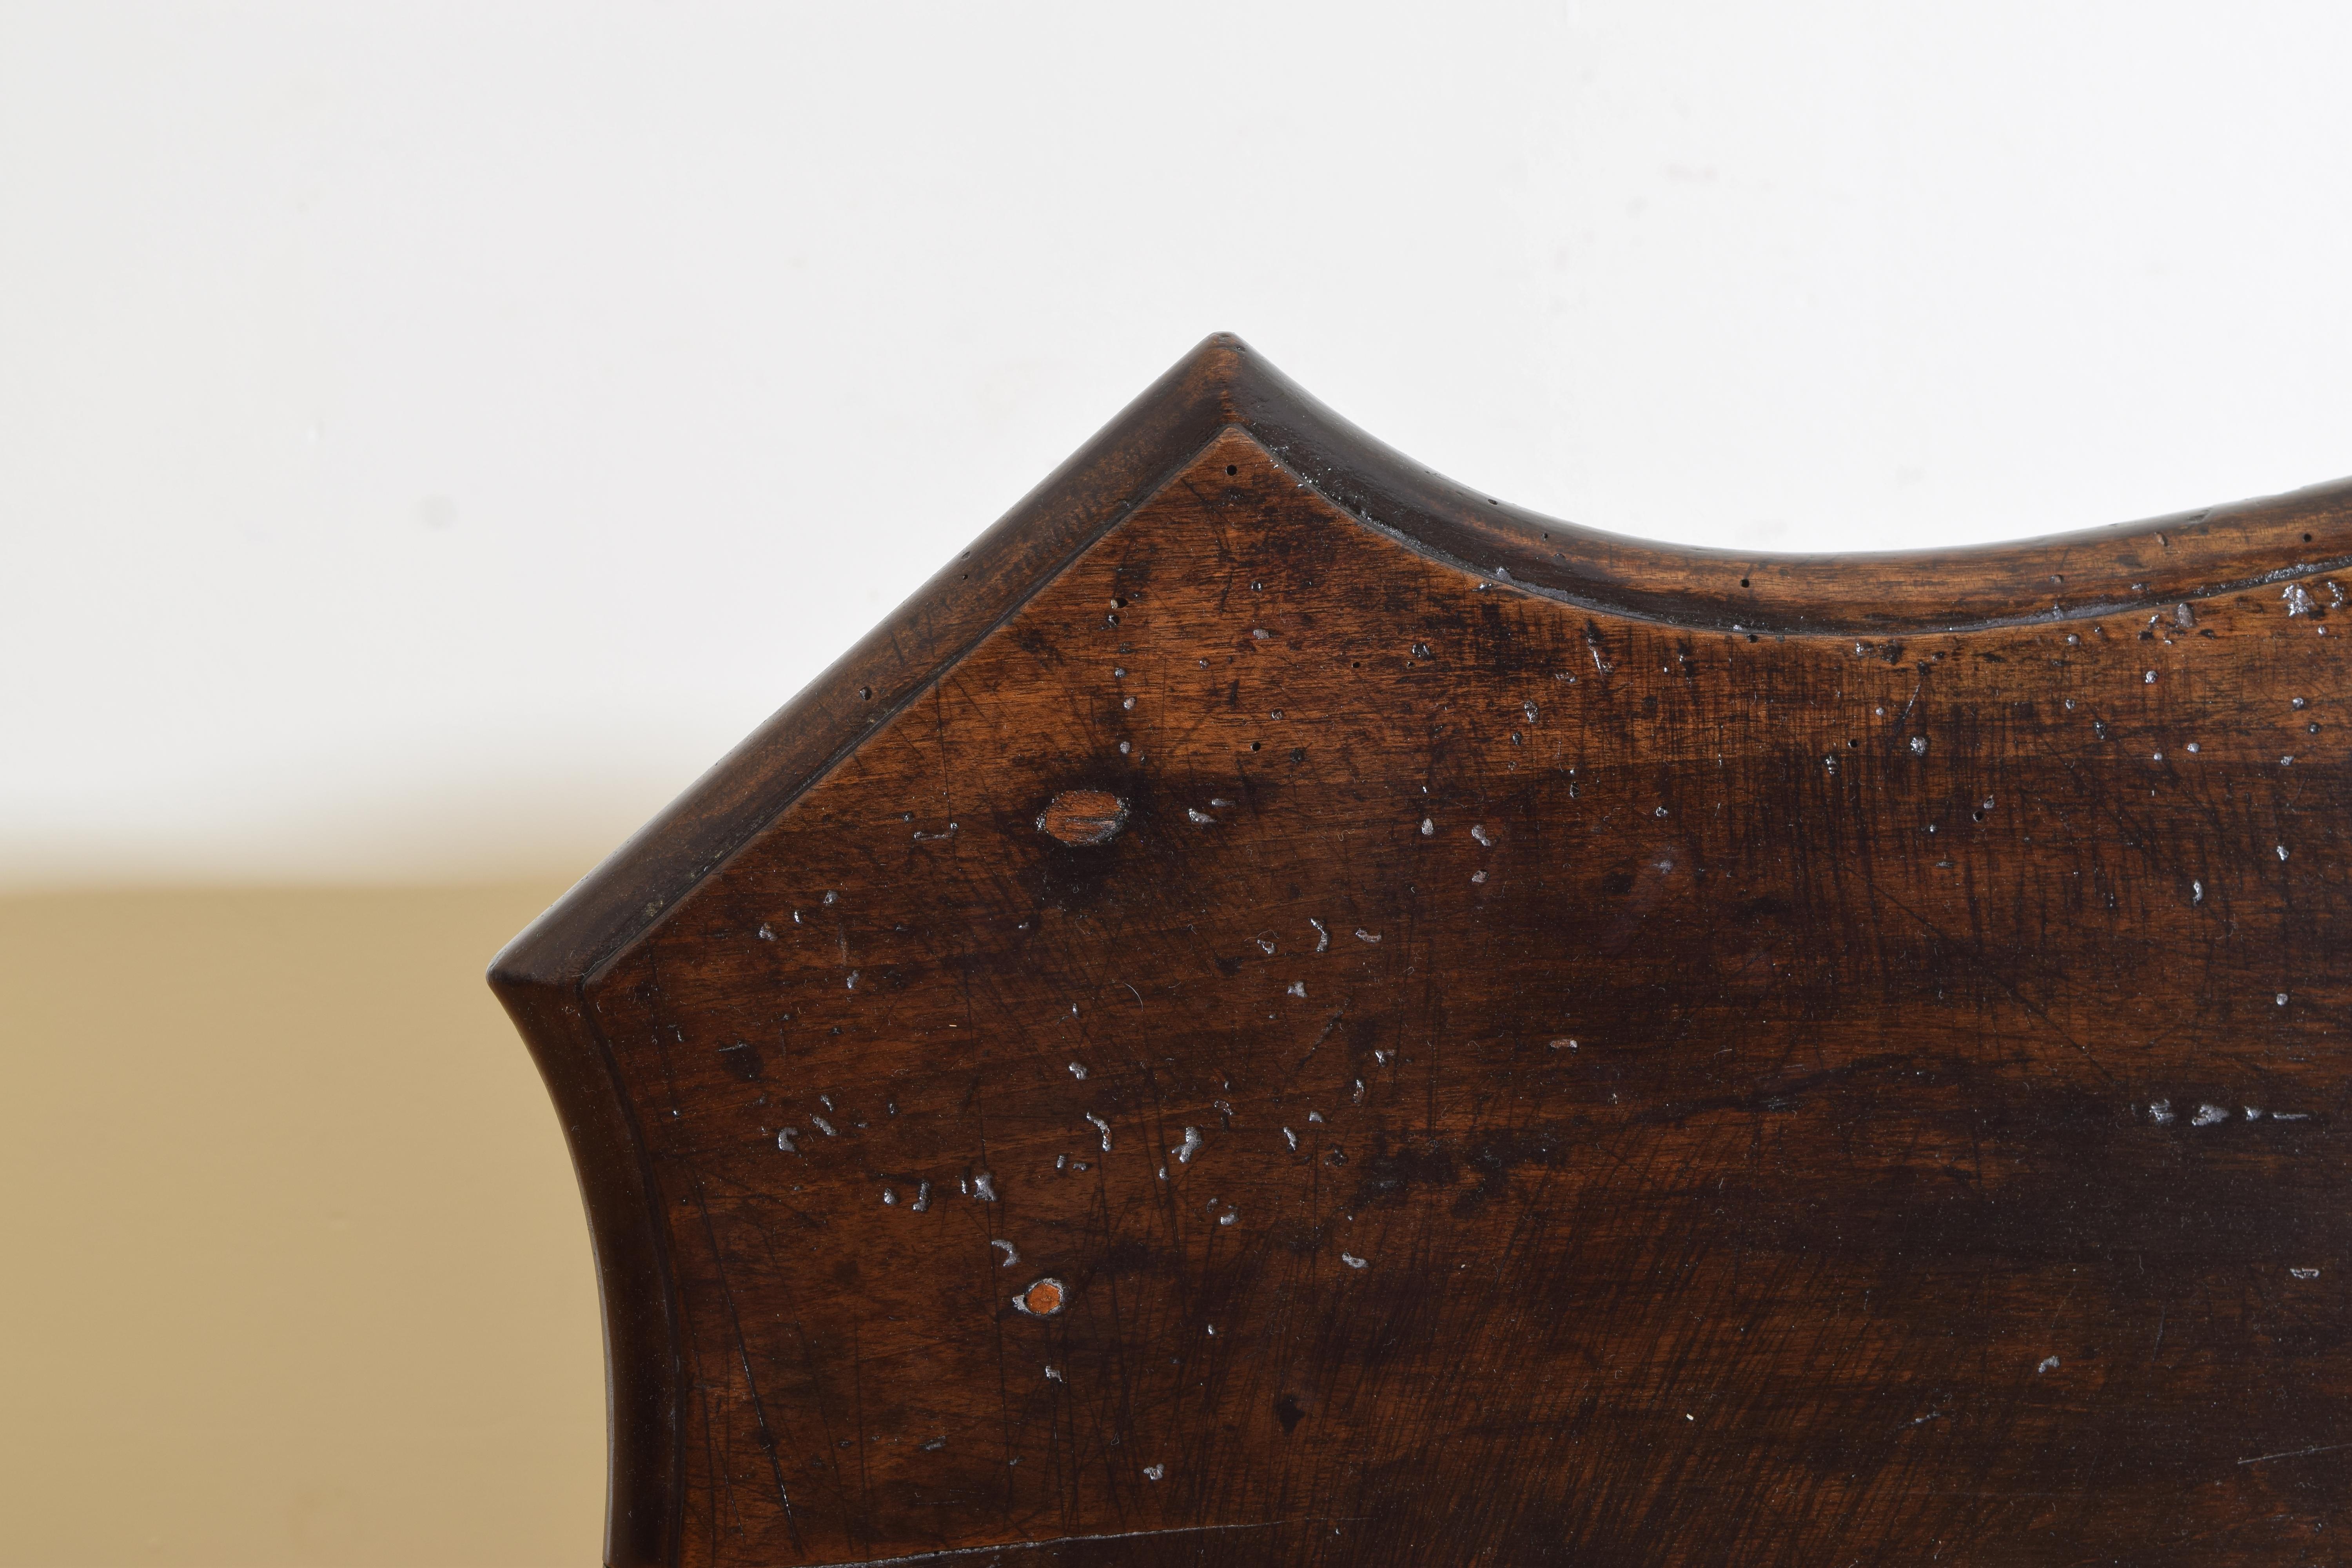 Italian, Venezia, Rococo Period Shaped & Carved Walnut Console Tables ca 1730-40 8